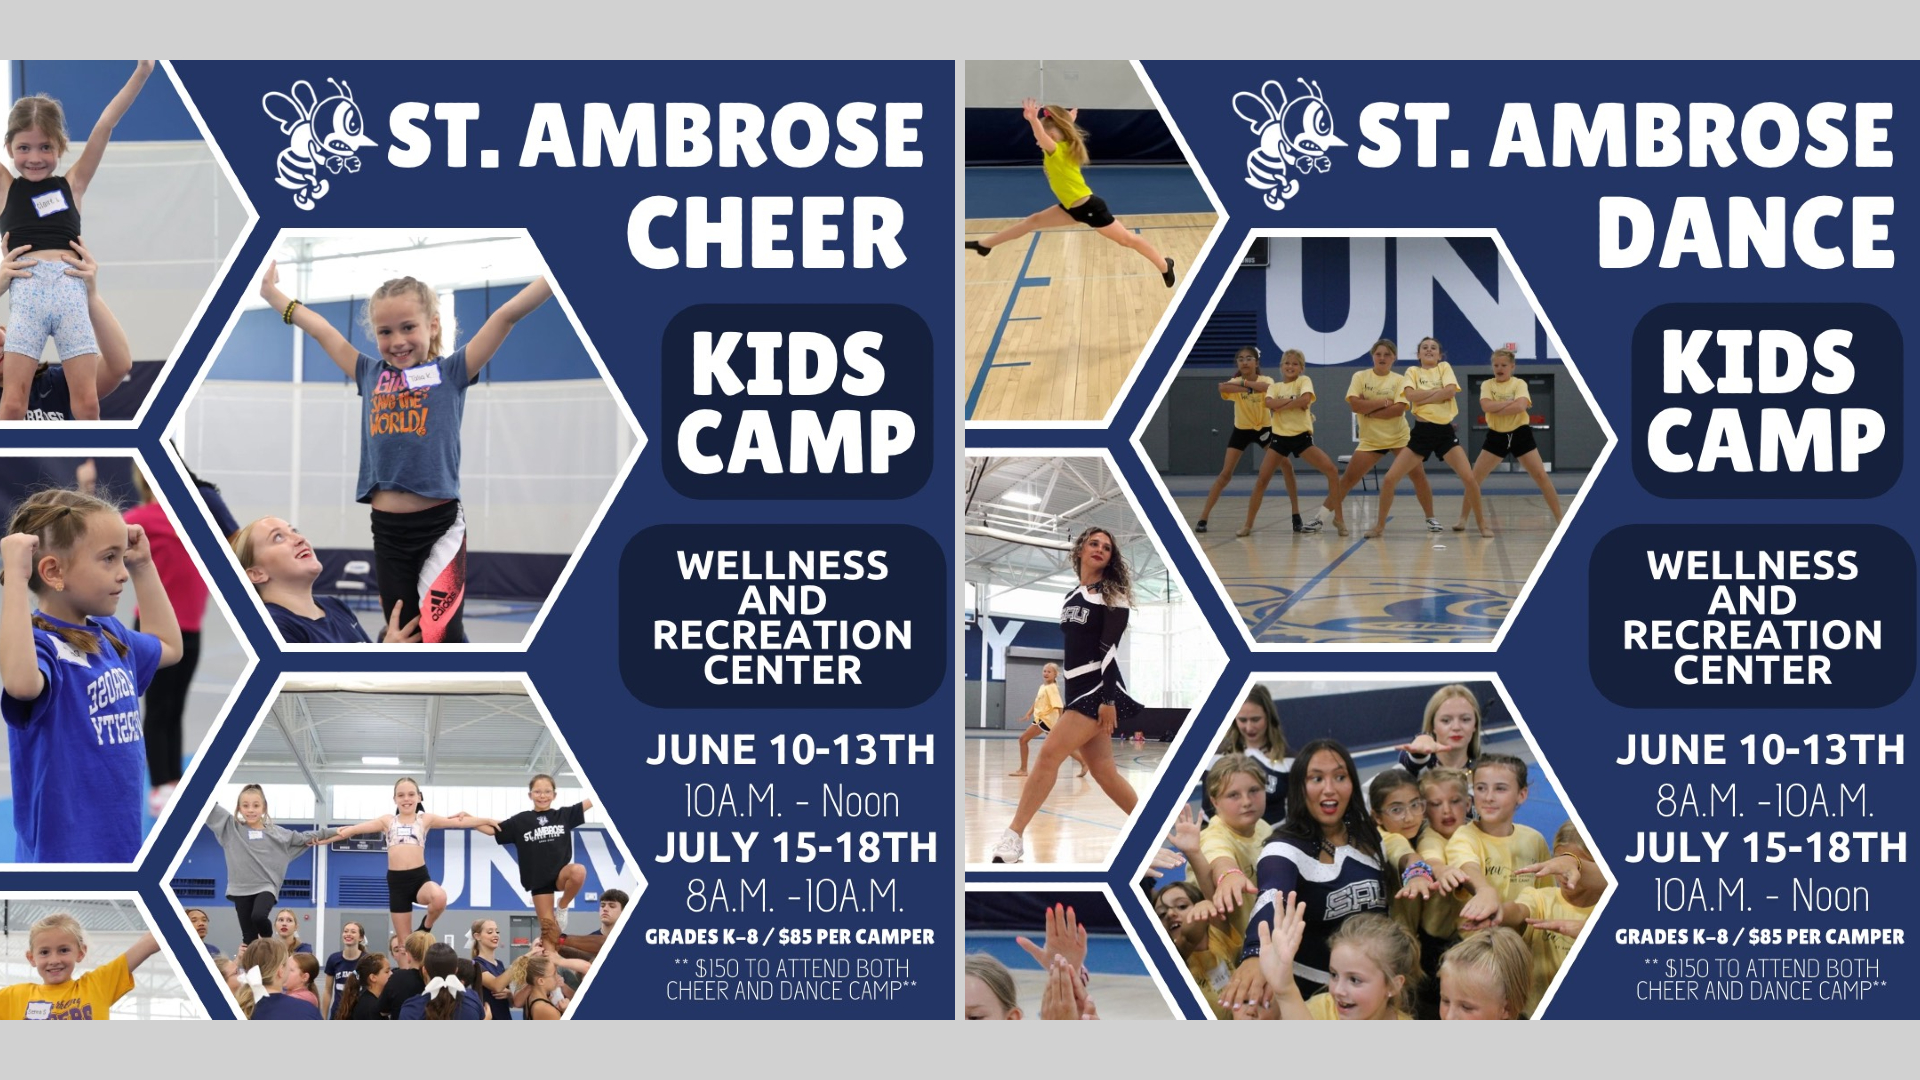 Sign up for St. Ambrose Spirit Squad Kids Camp